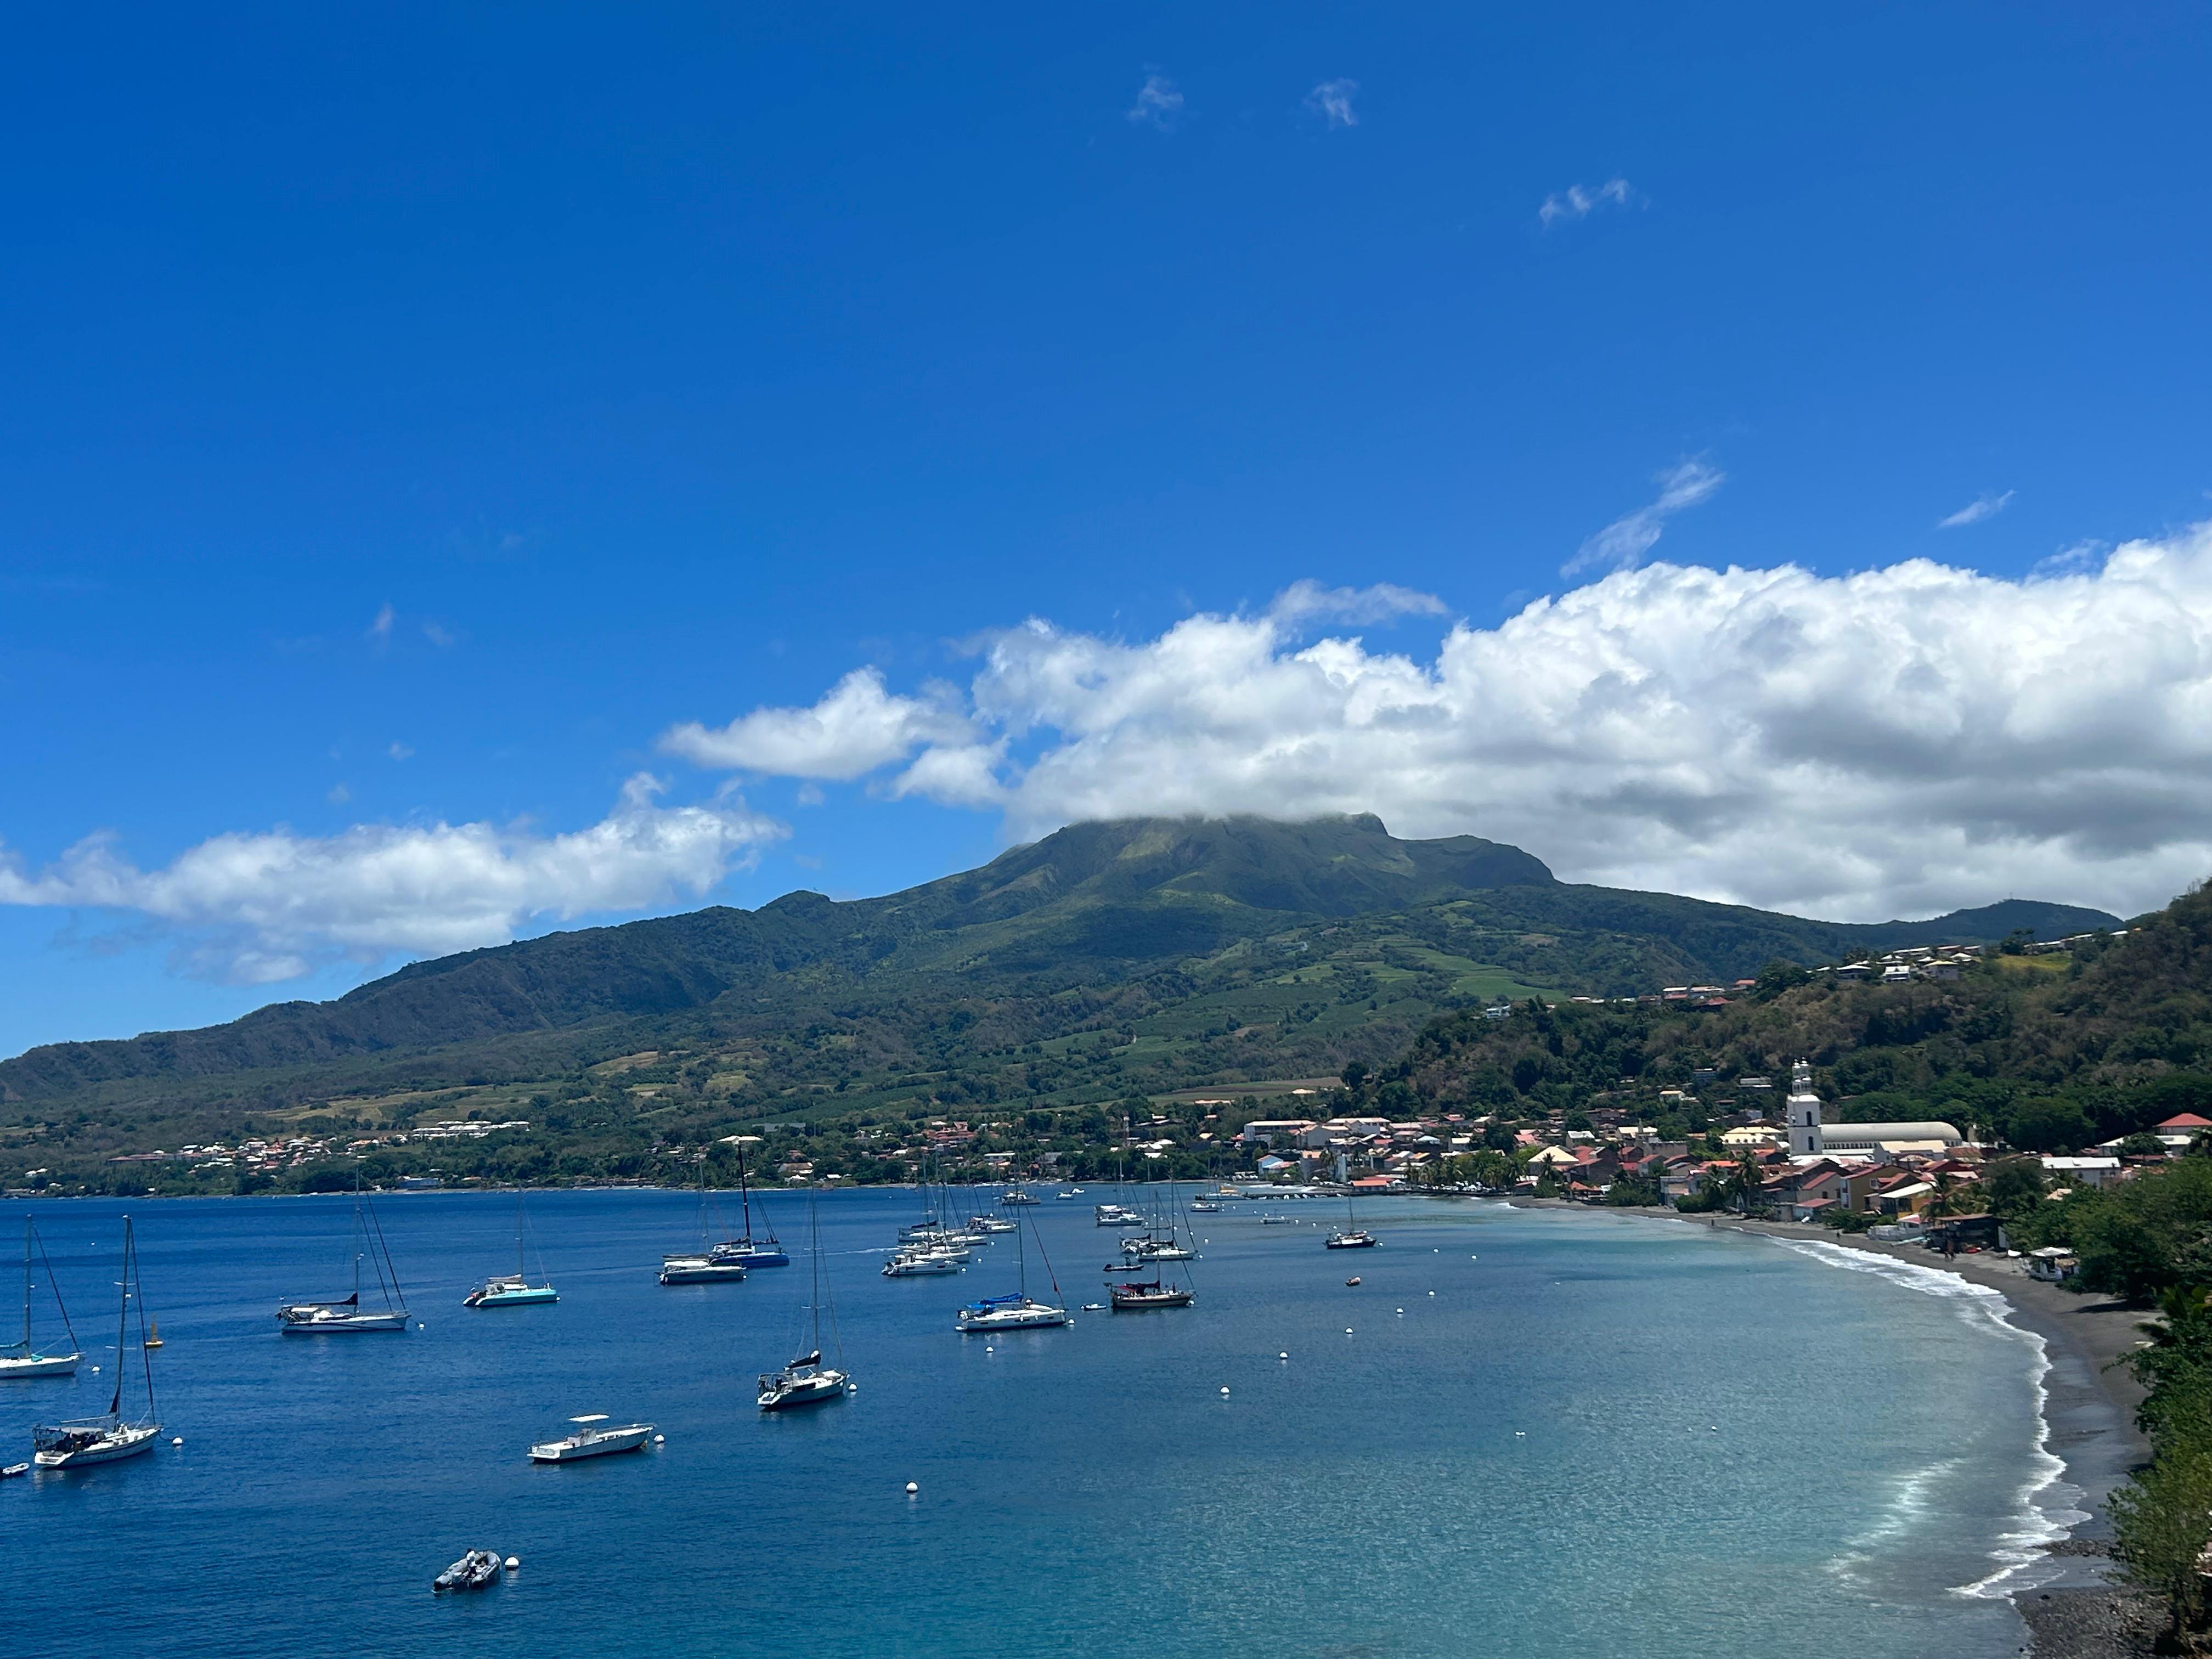     La Montagne Pelée mesure... : l'altitude du toit de la Martinique est désormais connue

